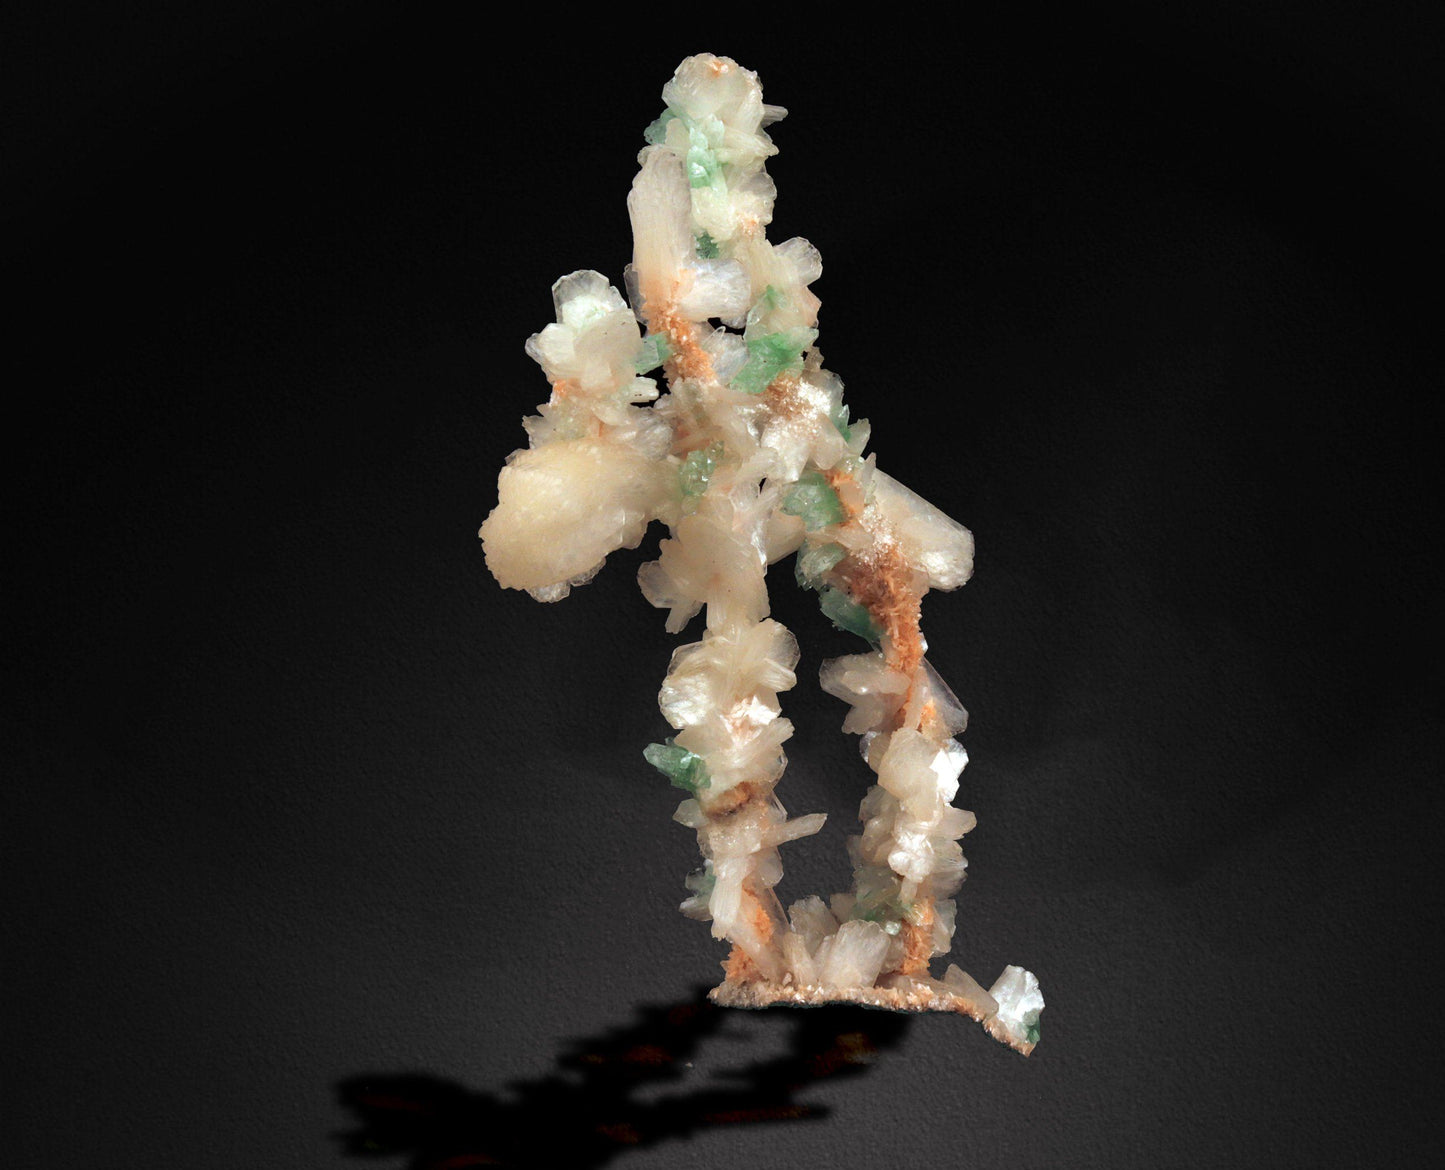 Green Apophyllite Flowers with Stilbite on Heulandite Bush Formation #W13 Apophyllite & Heulandite Superb Minerals 